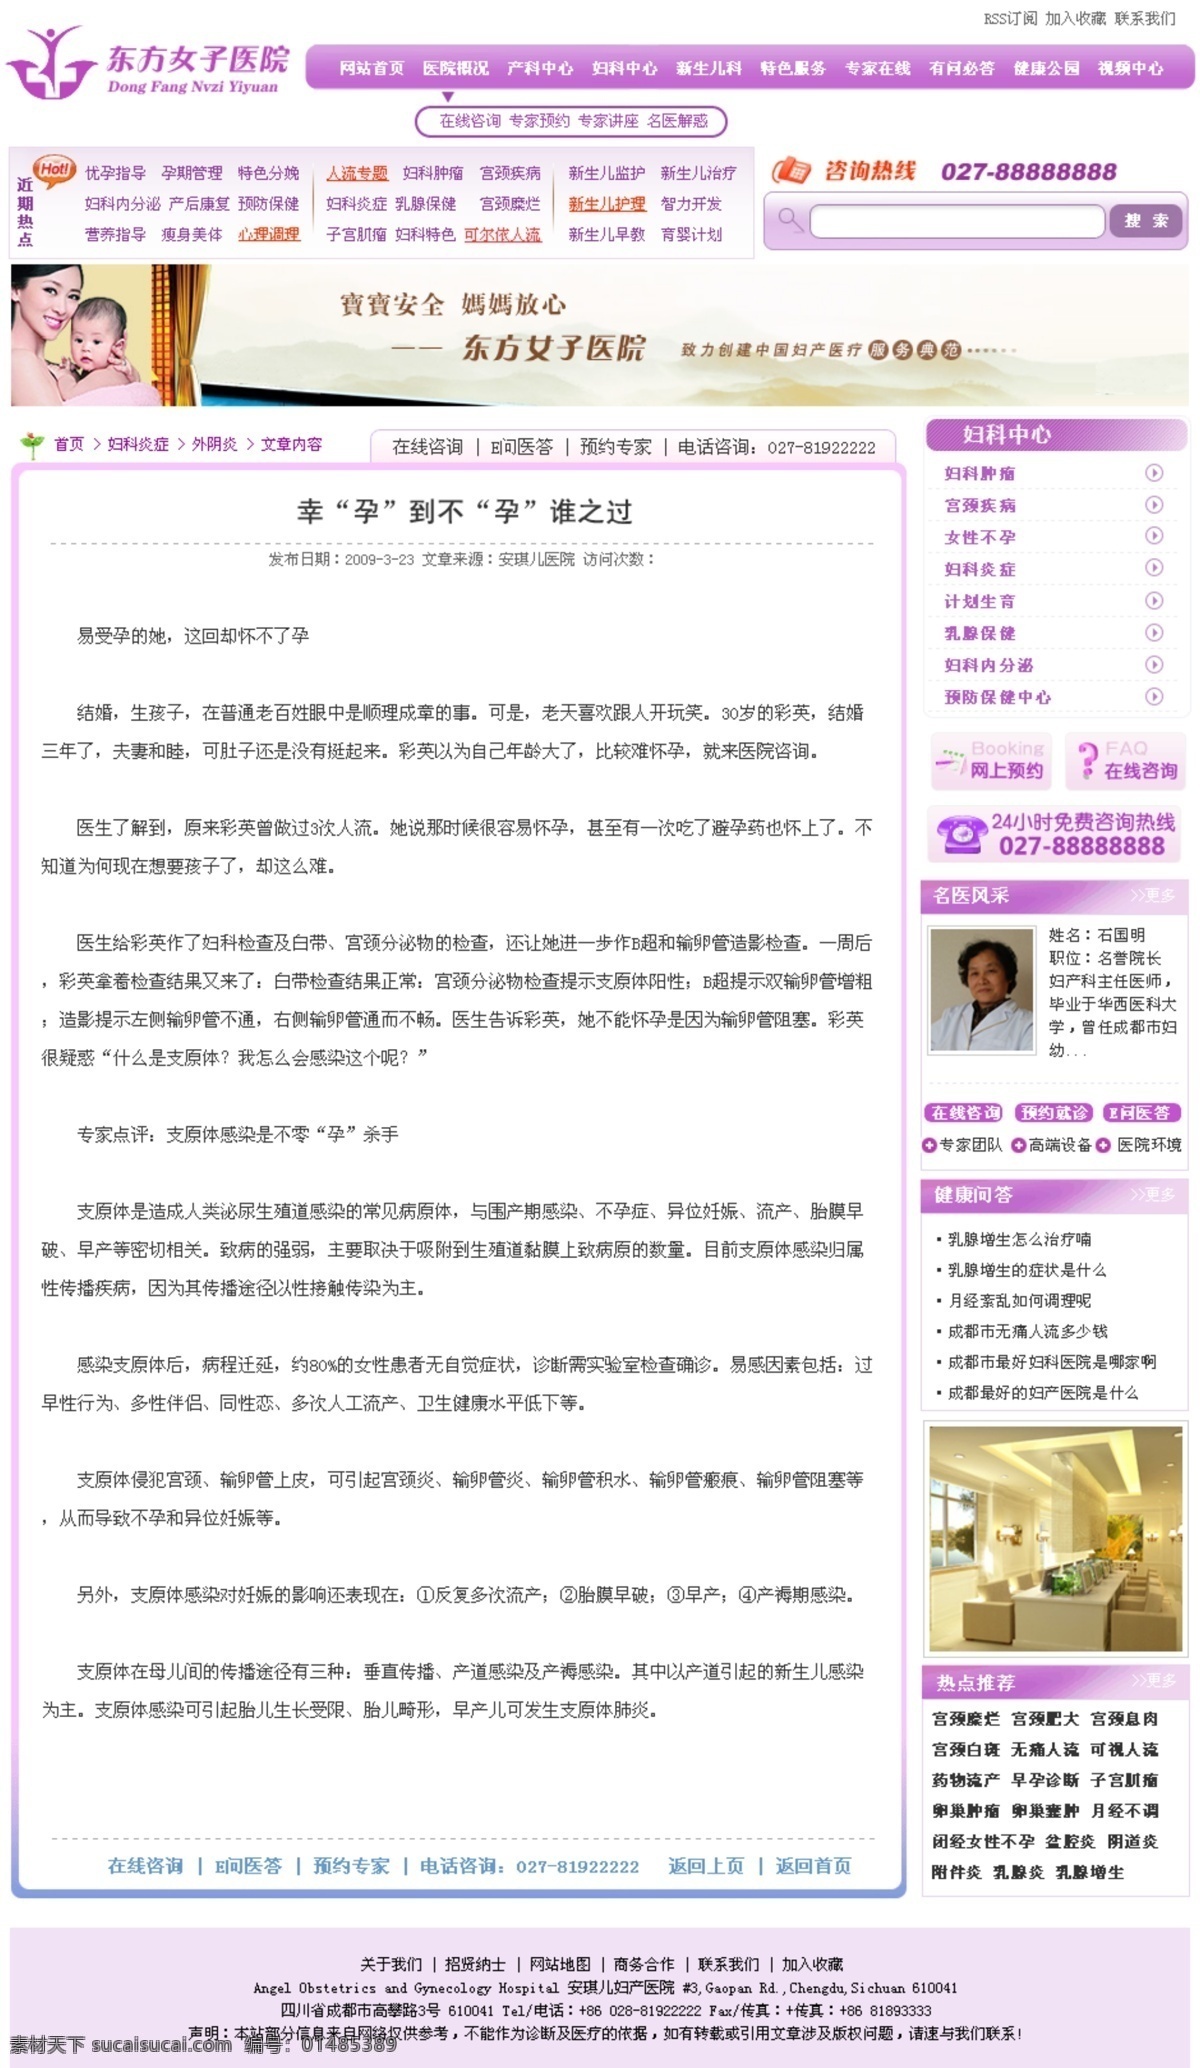 医院 美容 网页模板 医院效果图 源文件 整容 整形 中文模版 psd源文件